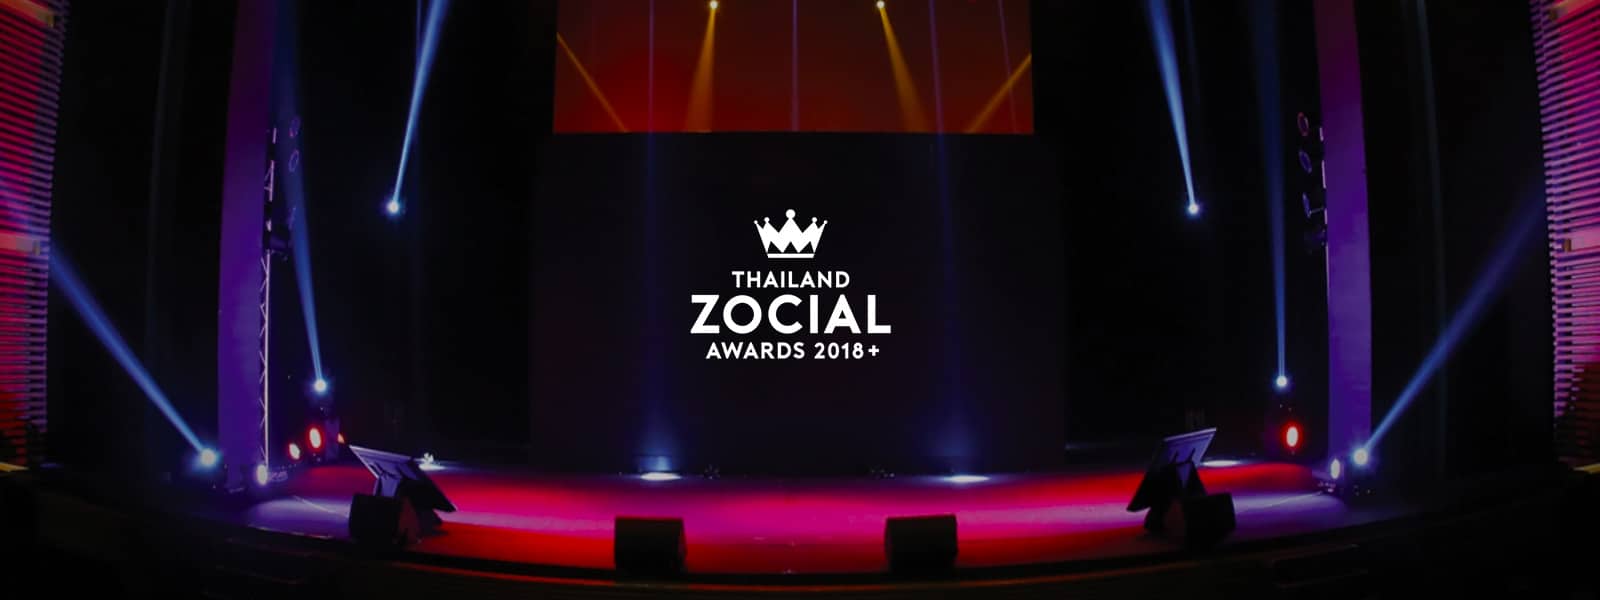 5 ข้อสรุปจากงาน Thailand Zocial Awards 2018 ที่คนทำคอนเทนต์ต้องรู้